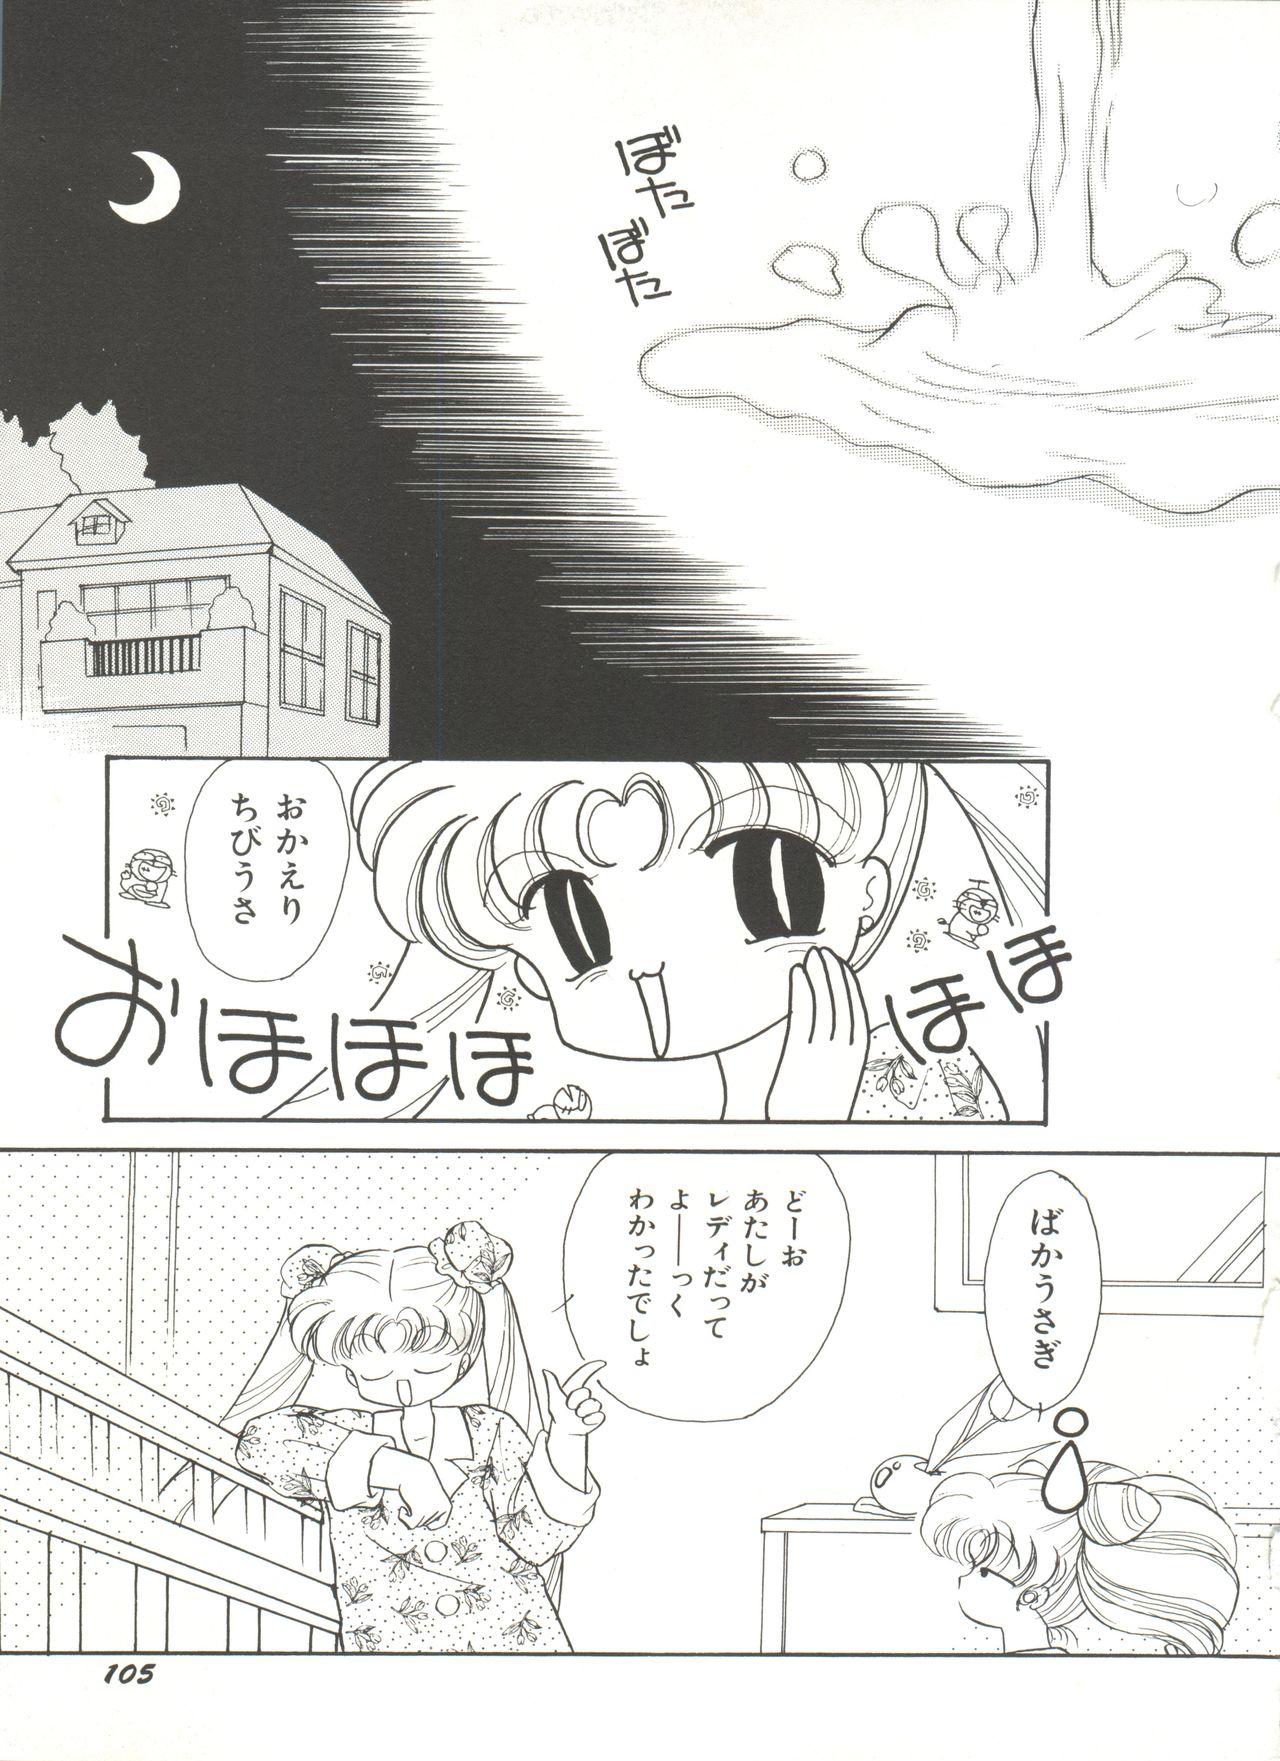 Bishoujo Doujinshi Anthology 16 - Moon Paradise 10 Tsuki no Rakuen 109